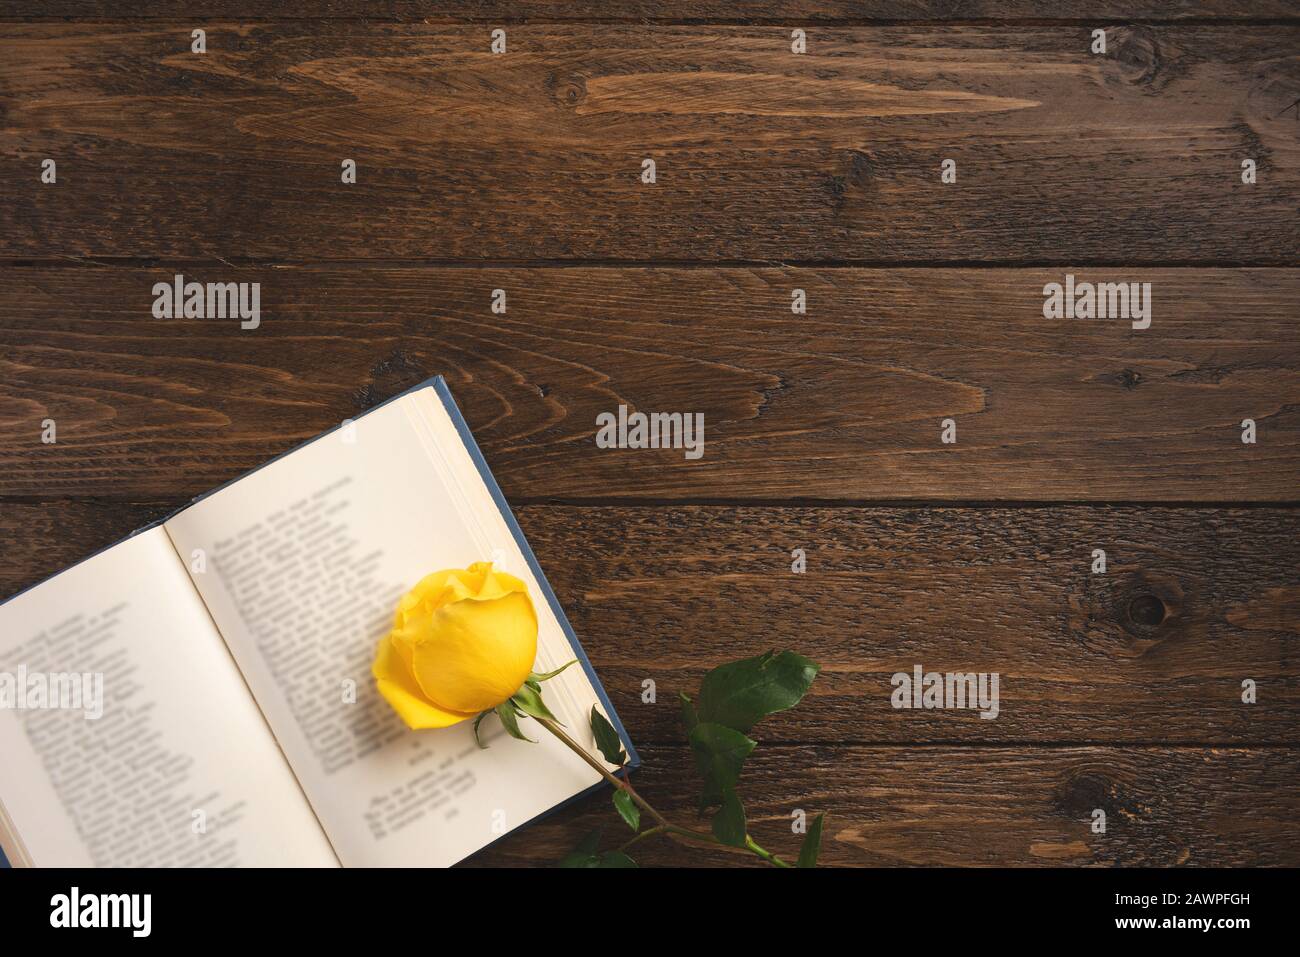 Concept romantique. Livre ouvert avec poèmes et rose, sur fond de bois. Couche plate, vue supérieure, espace de copie. Banque D'Images